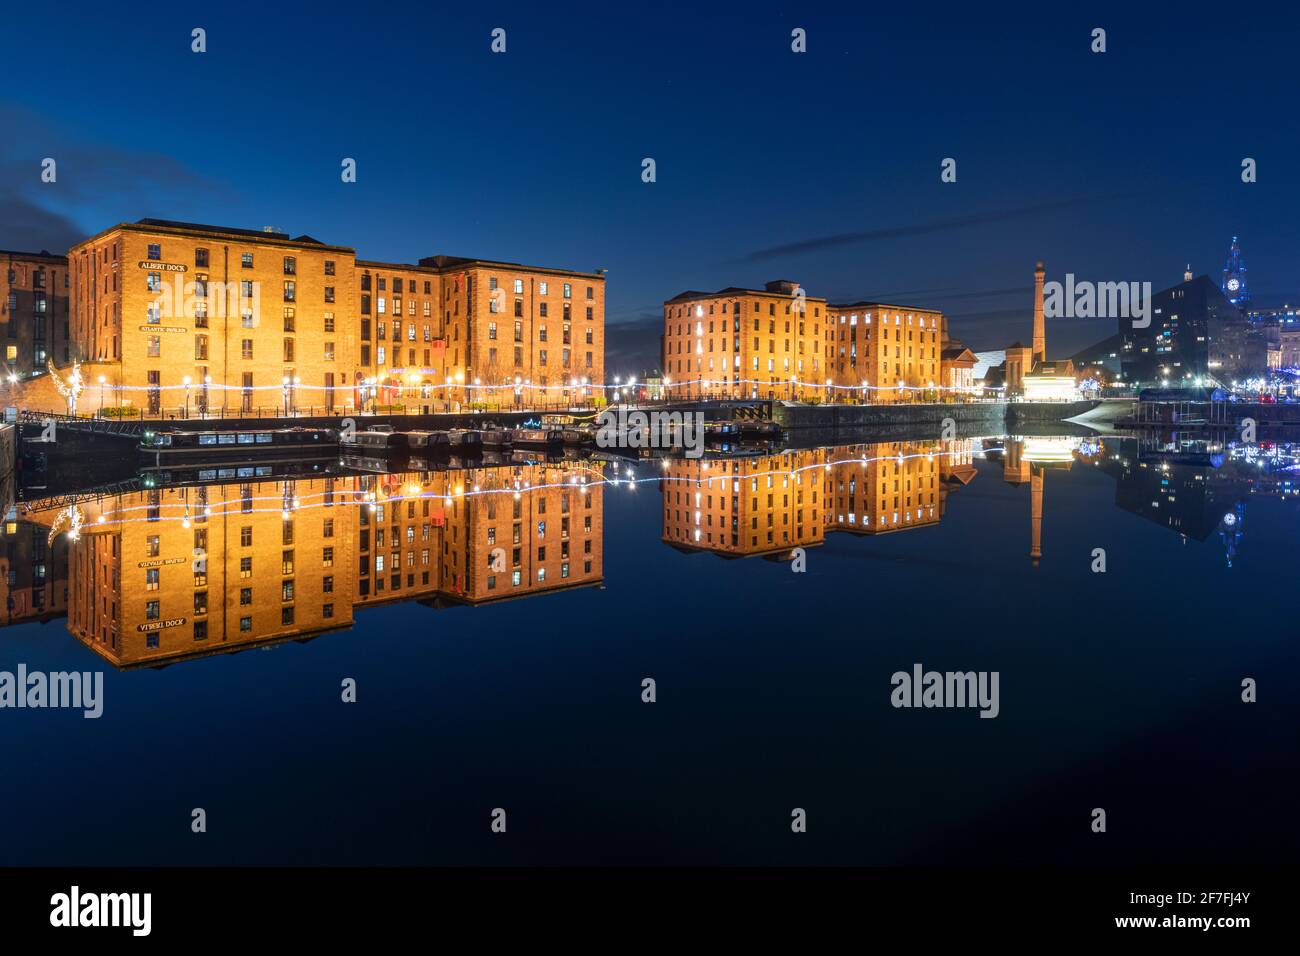 Il Royal Albert Dock riflette di notte, patrimonio dell'umanità dell'UNESCO, Liverpool, Merseyside, Inghilterra, Regno Unito, Europa Foto Stock